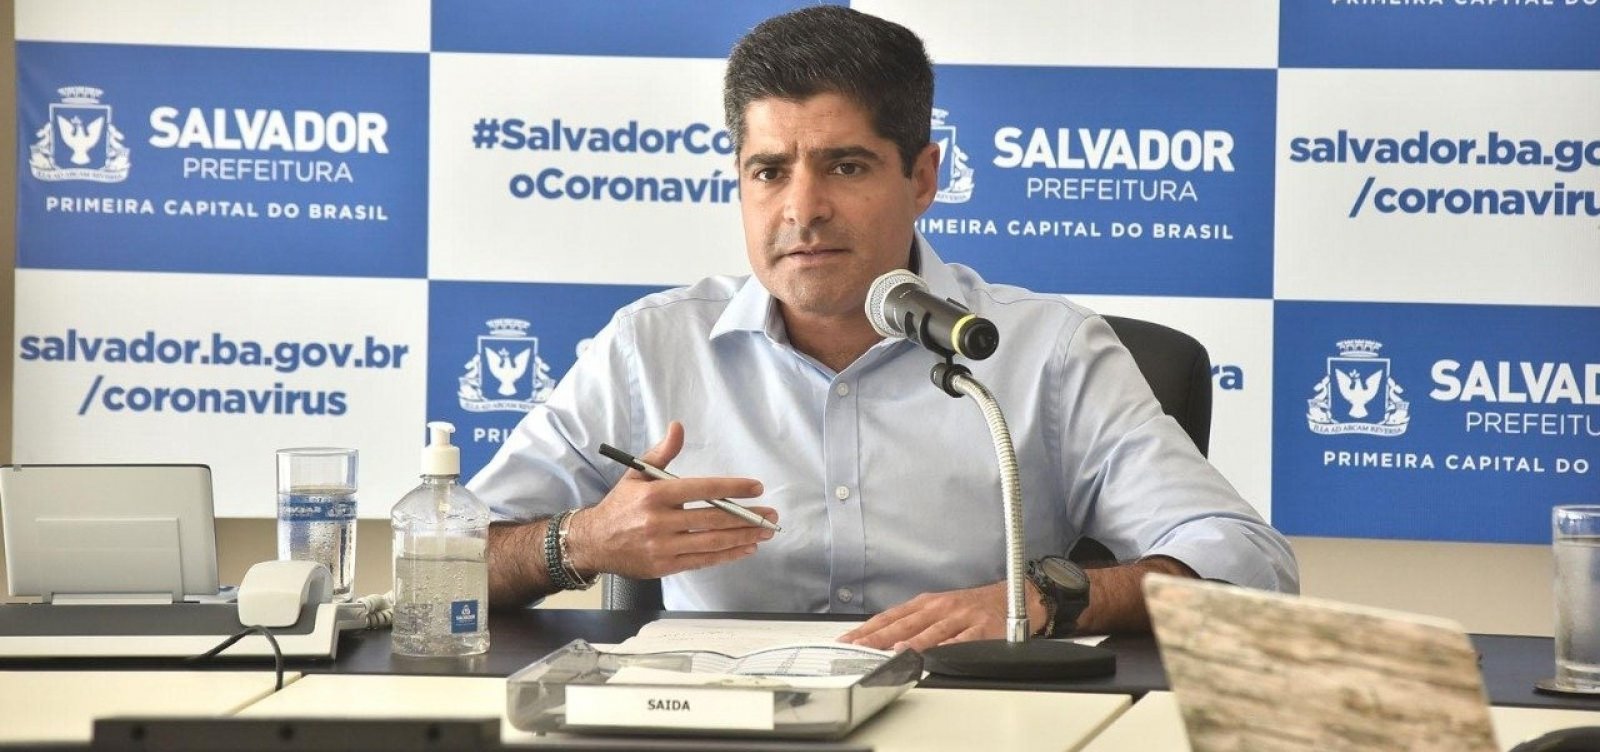 Primeira fase da retomada econômica em Salvador foi um sucesso, diz ACM Neto